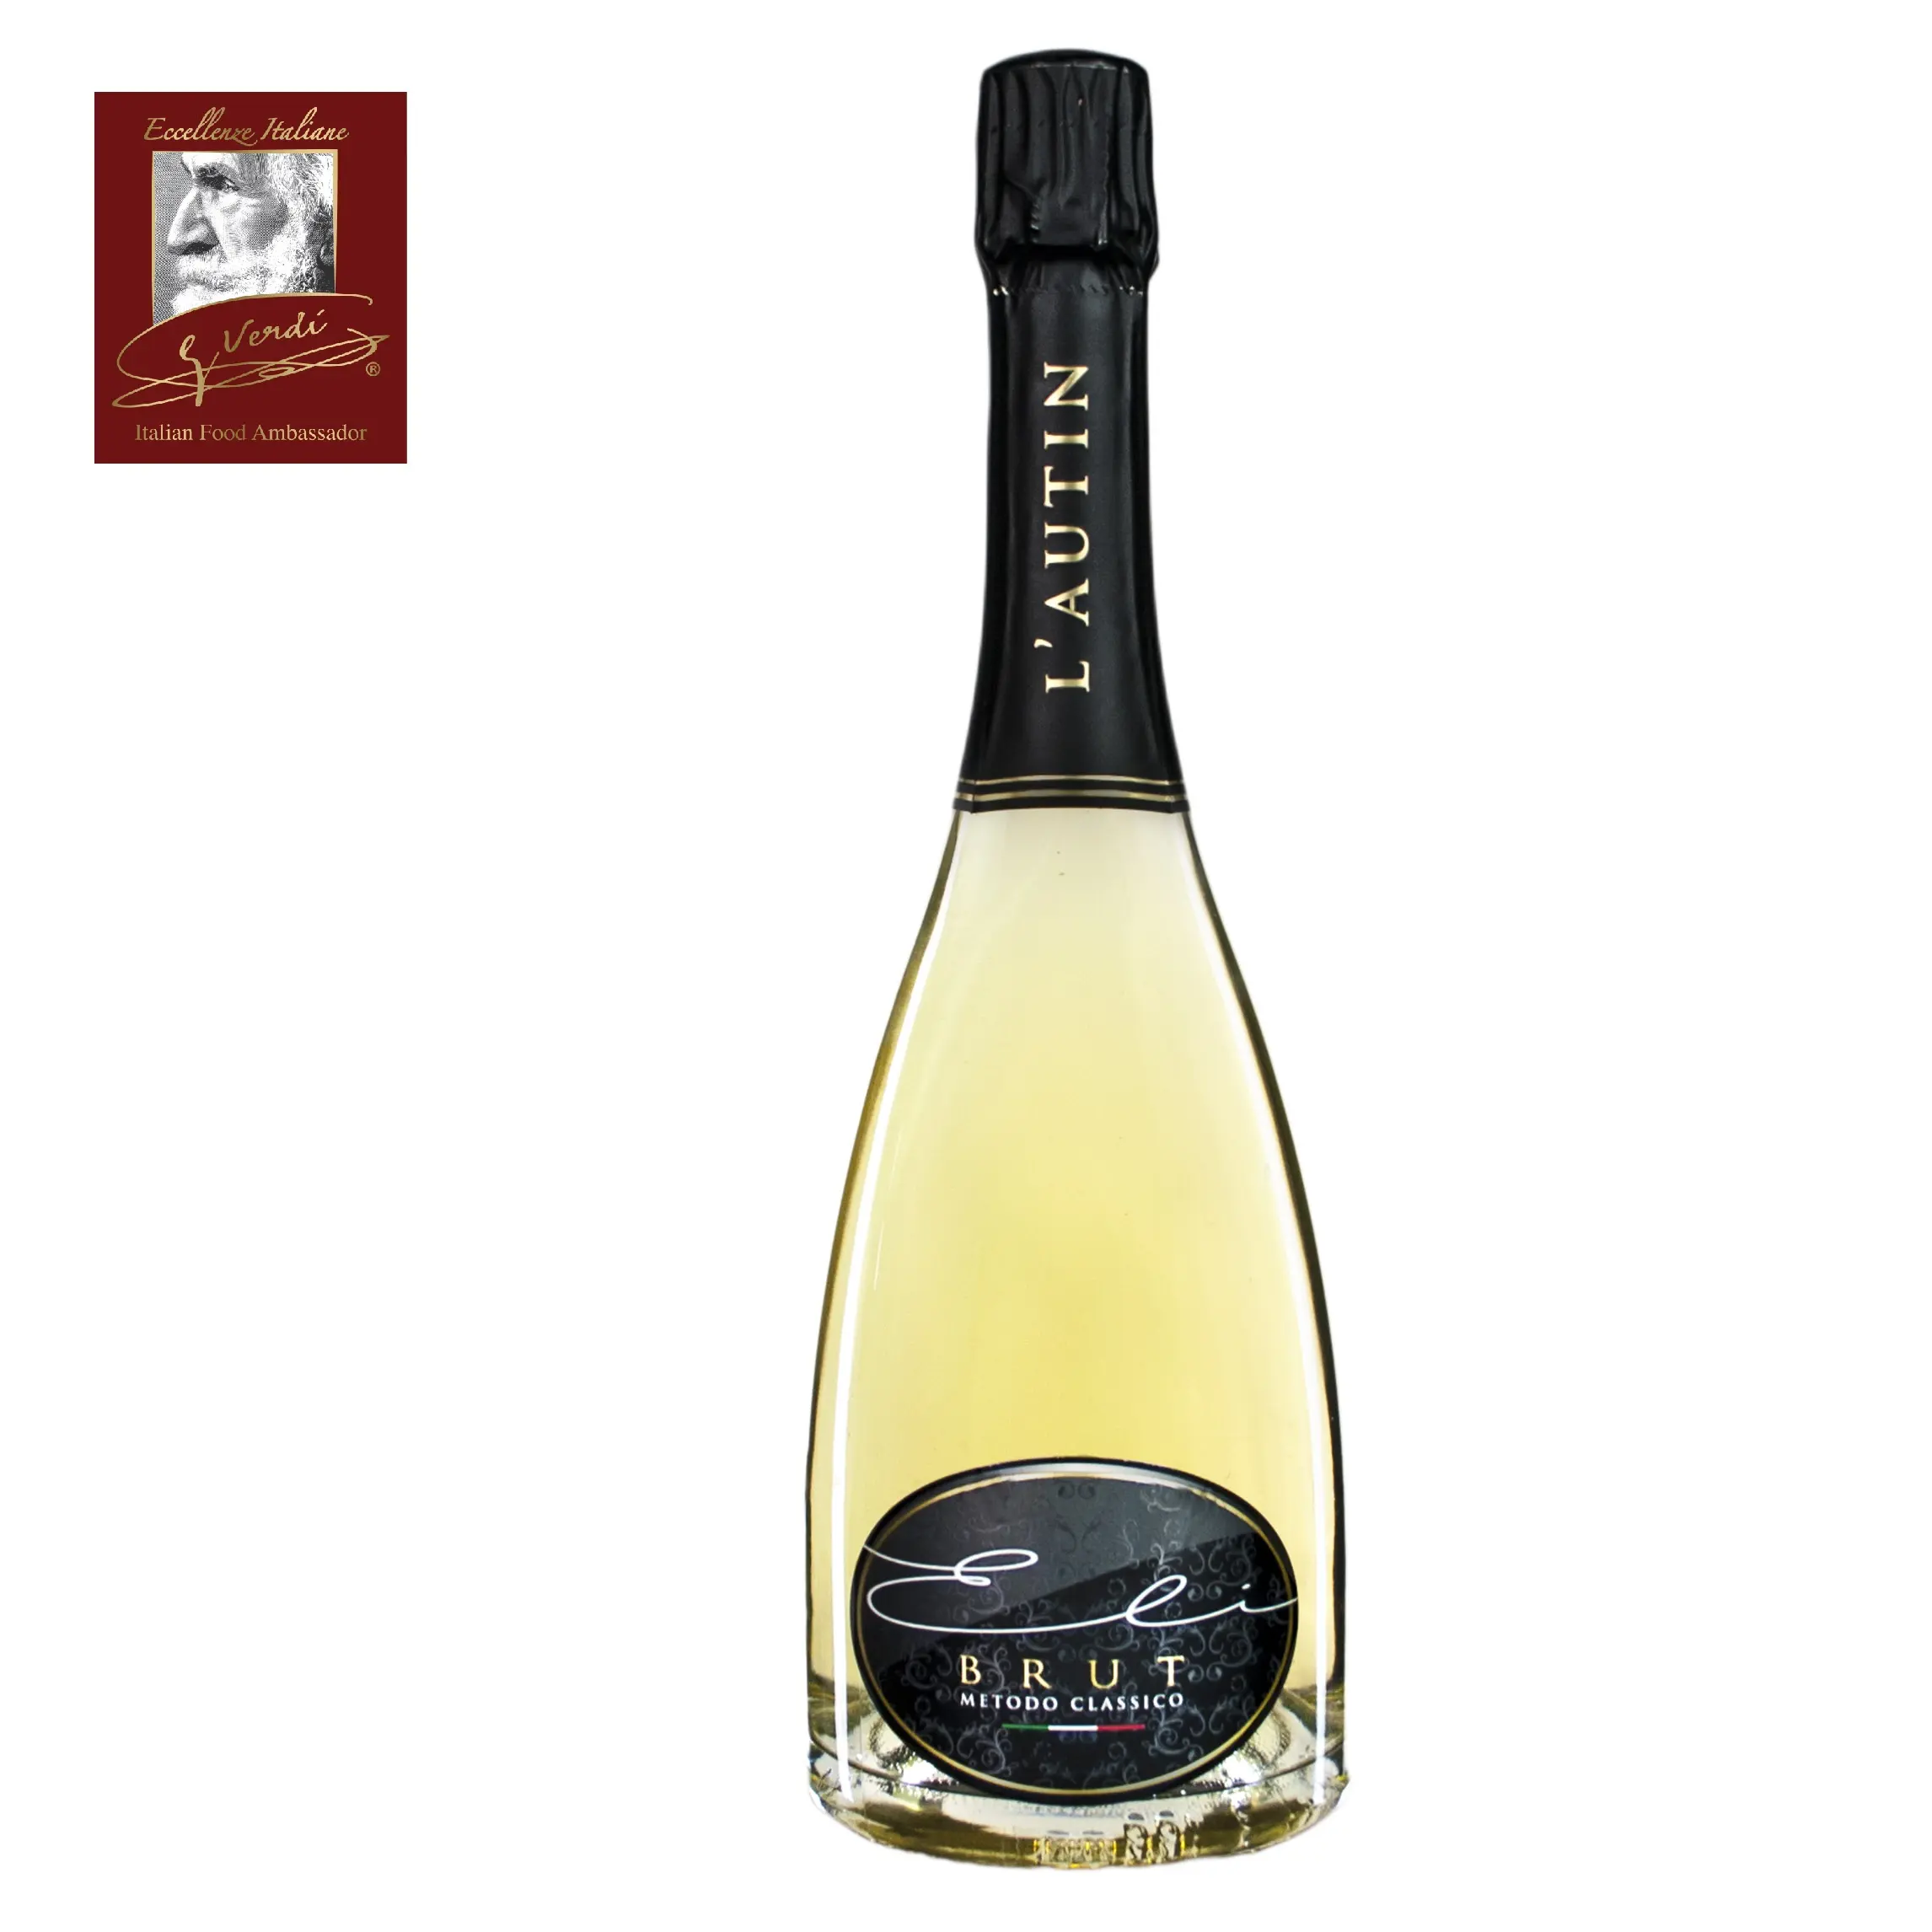 750 ml Italian Wine Classic Method Eli Brut Giuseppe Verdi Selection White Wine Made in Italy